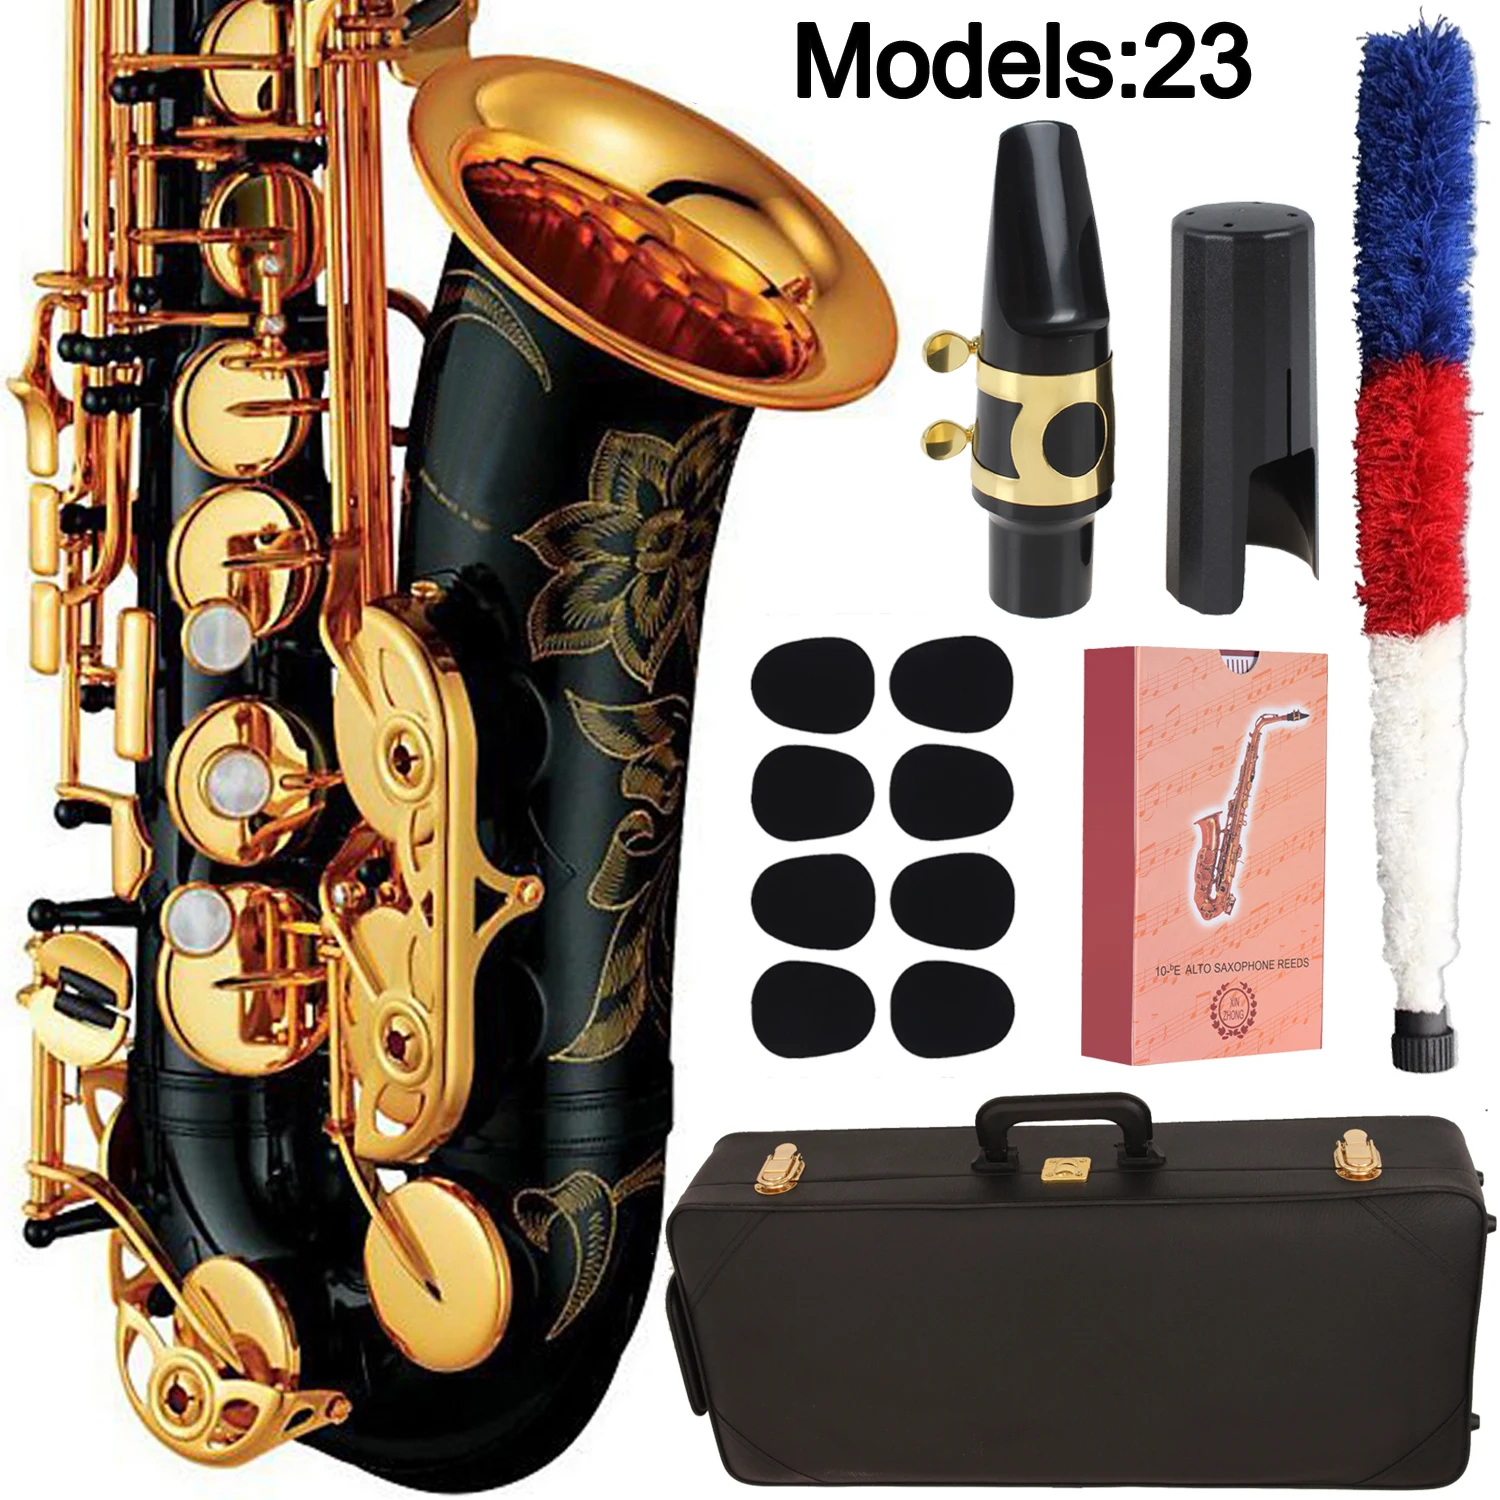 Альт-саксофон MFC 23 Профессиональный альт-саксофон под заказ 280 серия высокий саксофон черный лак с мундштуком тростники чехол на шею